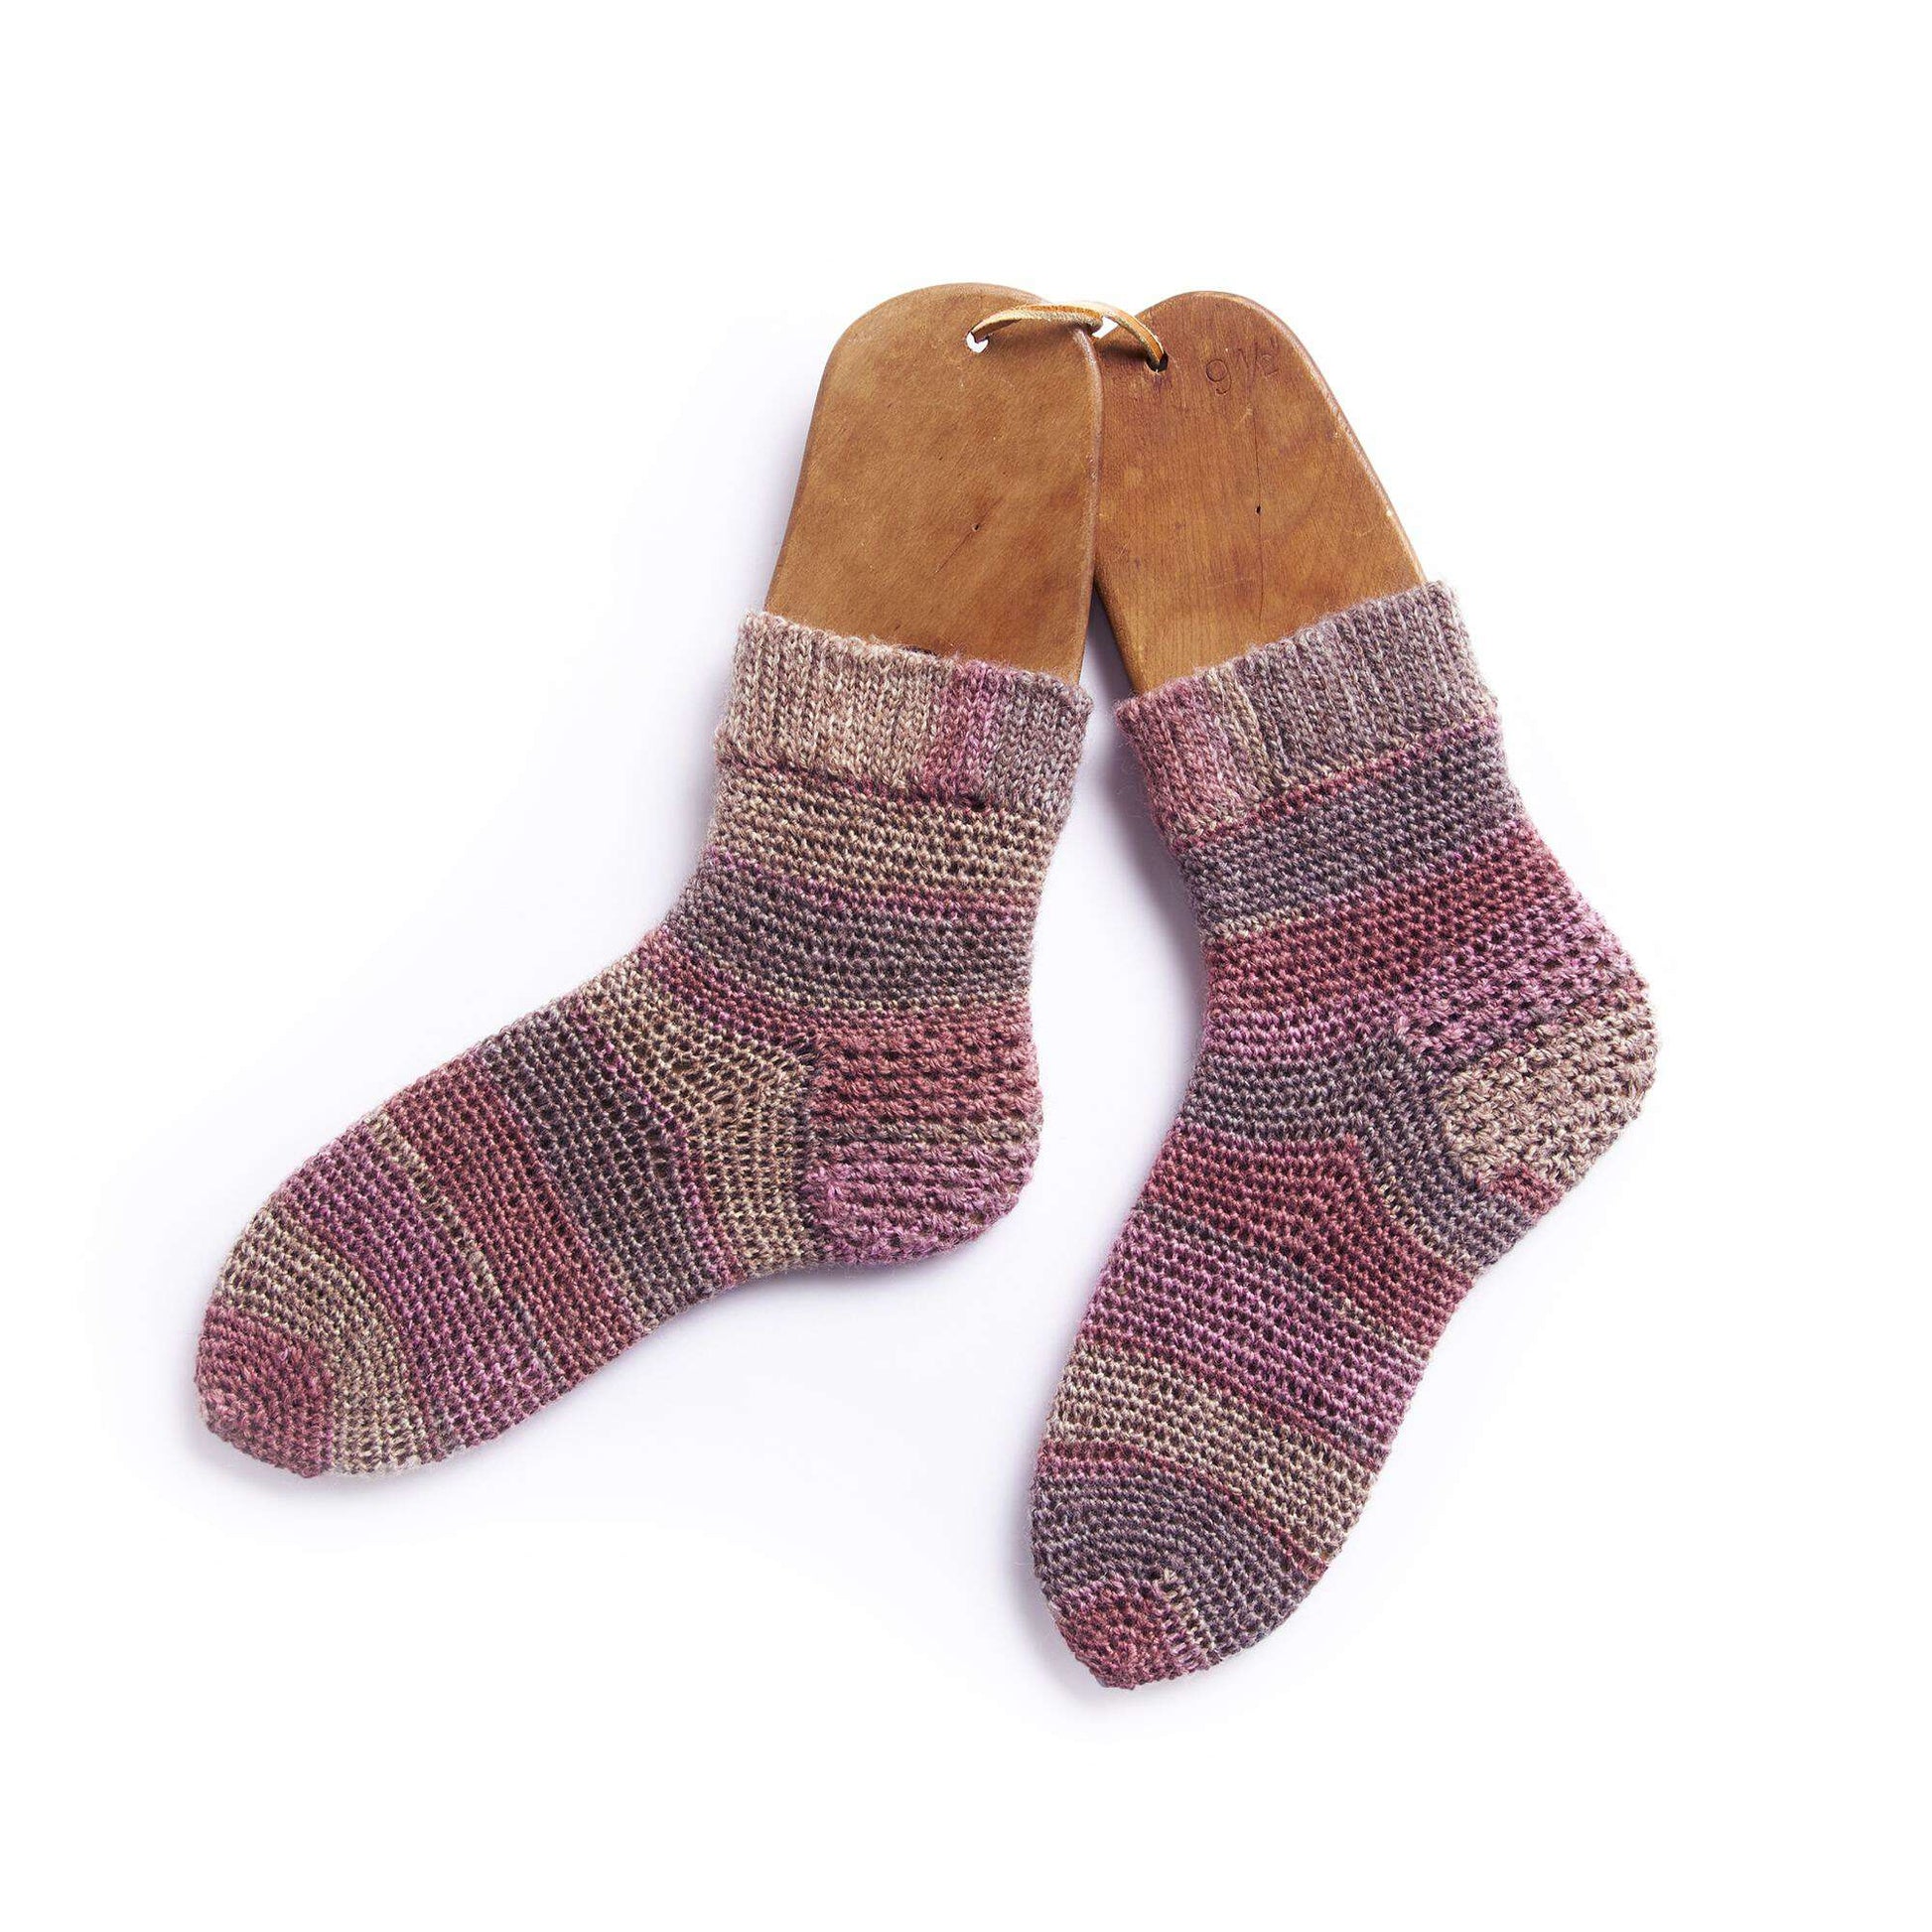 Free Patons Slip Stitch Cuff Crochet Socks Pattern